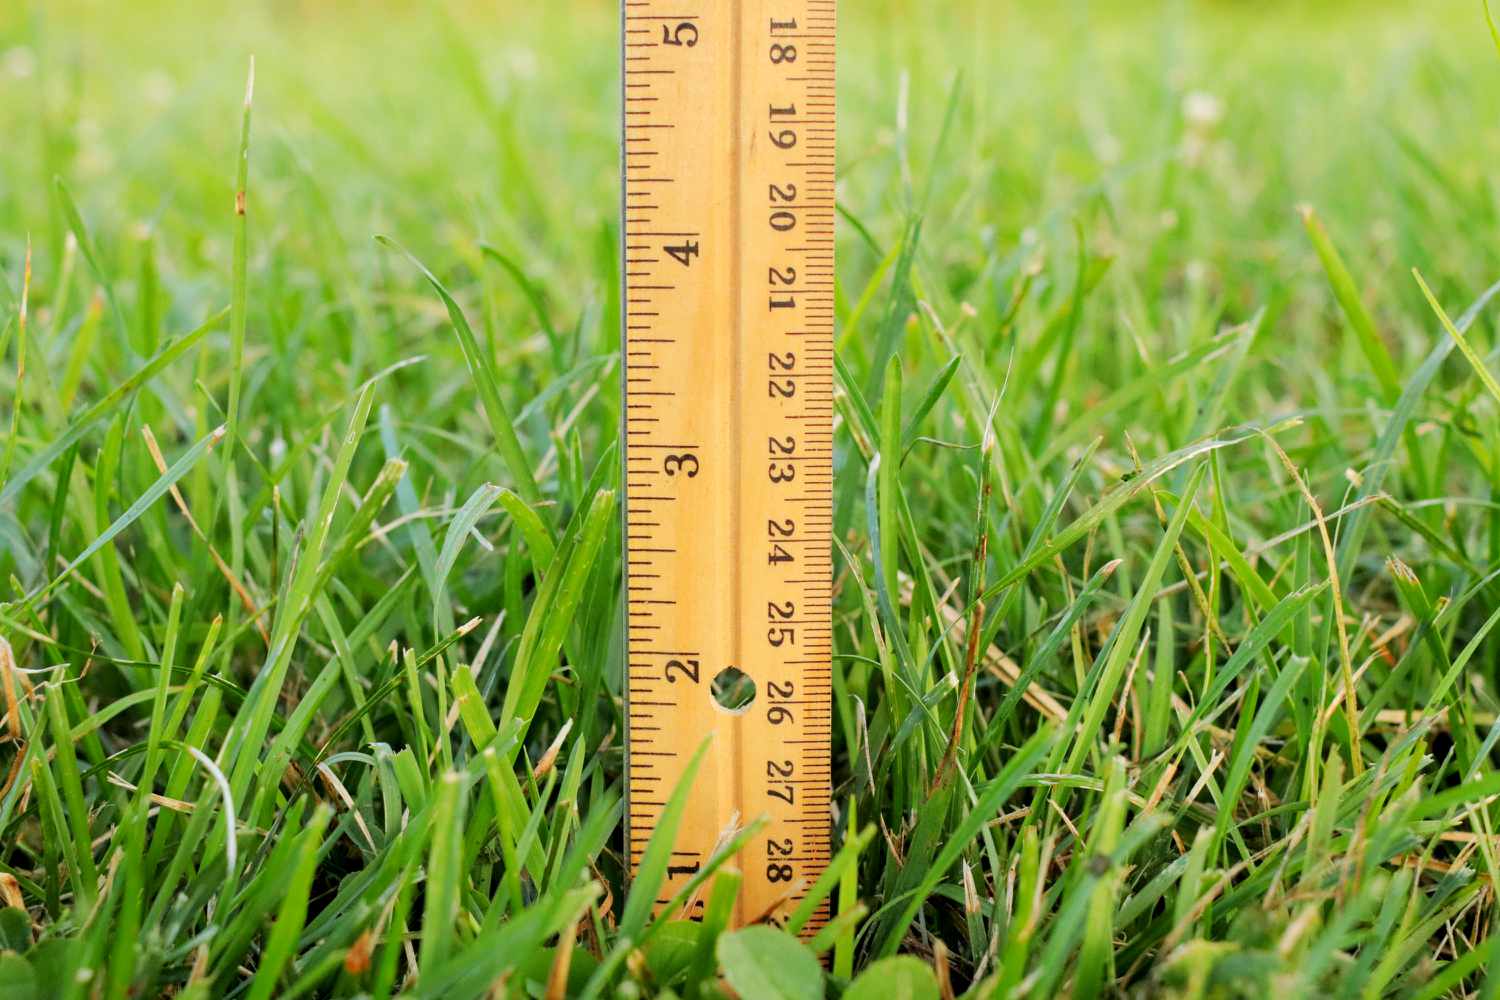 Comment la hauteur de la tondeuse affecte la santé de la pelouse